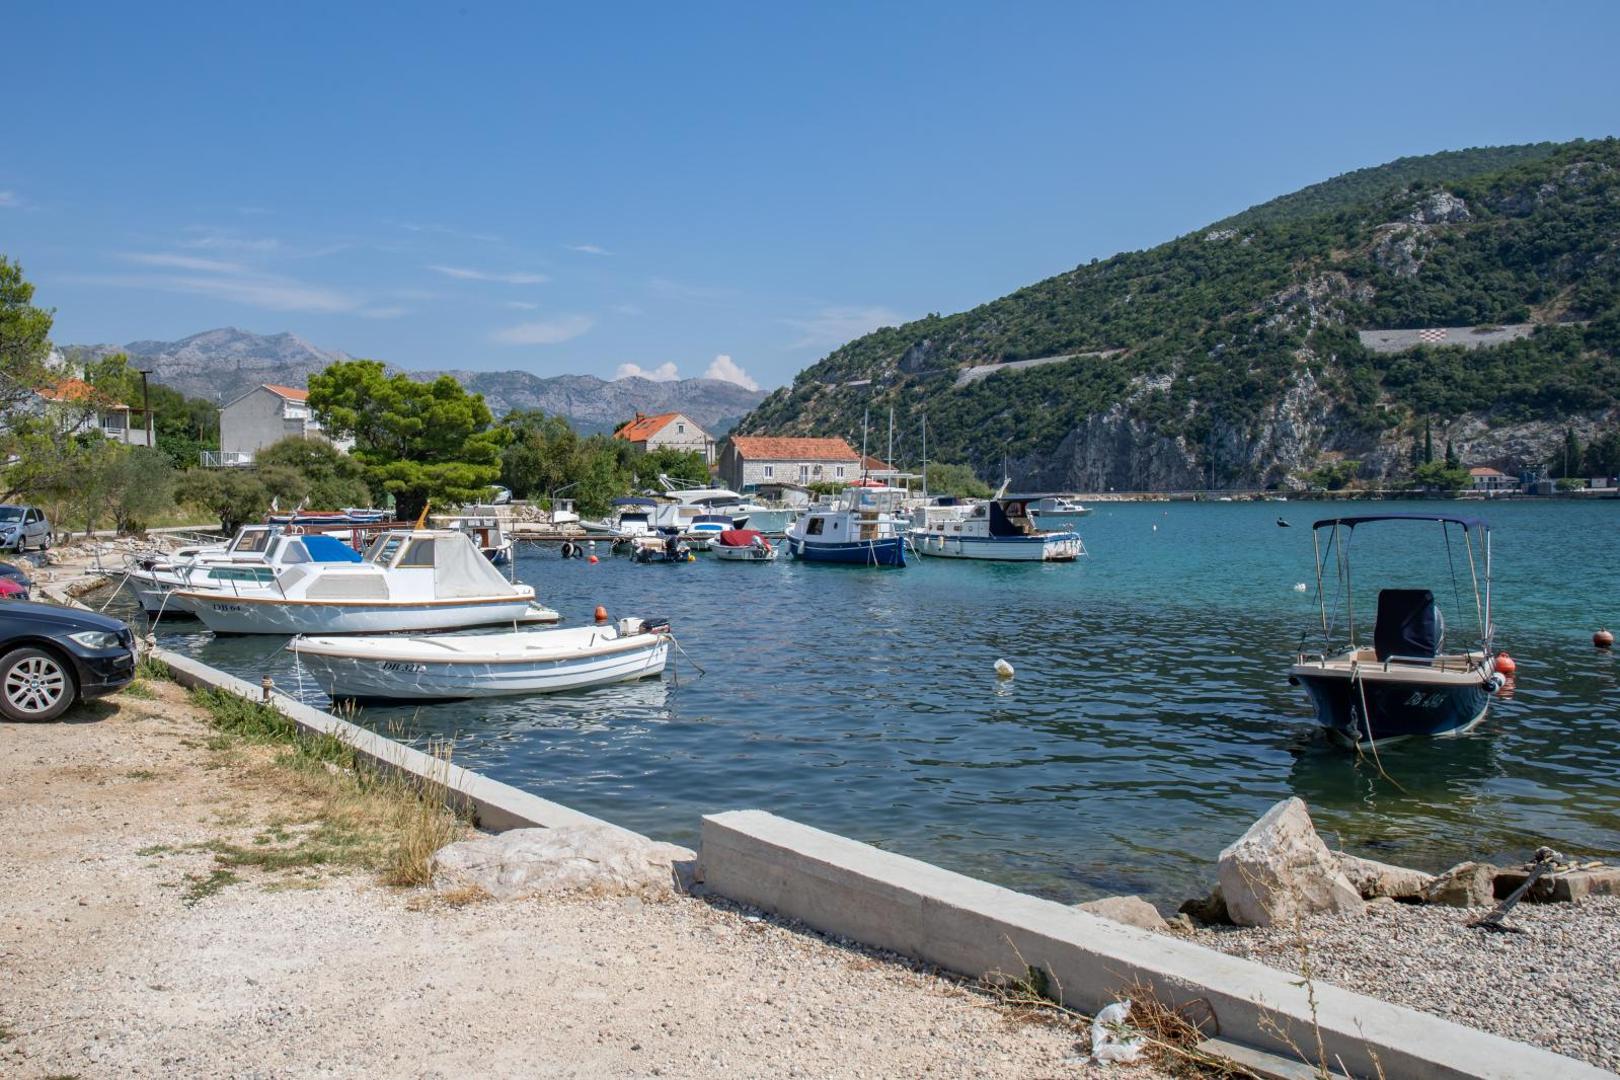 13.08.2020., Mokosica, Dubrovnik - Dubrovacko naselje Mokosica. 
Photo: Grgo Jelavic/PIXSELL